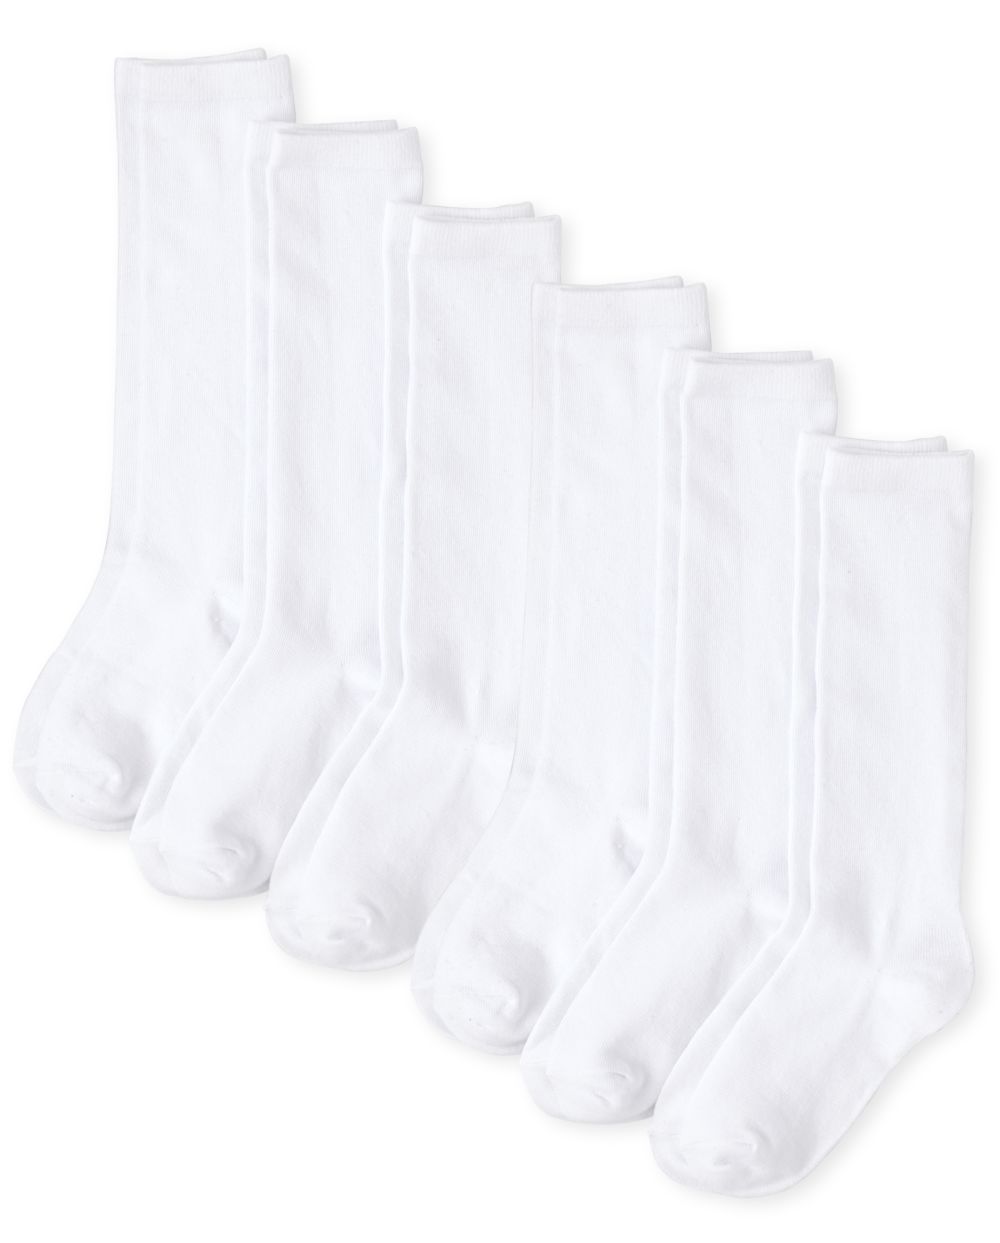 Girls Knee Socks 6-Pack